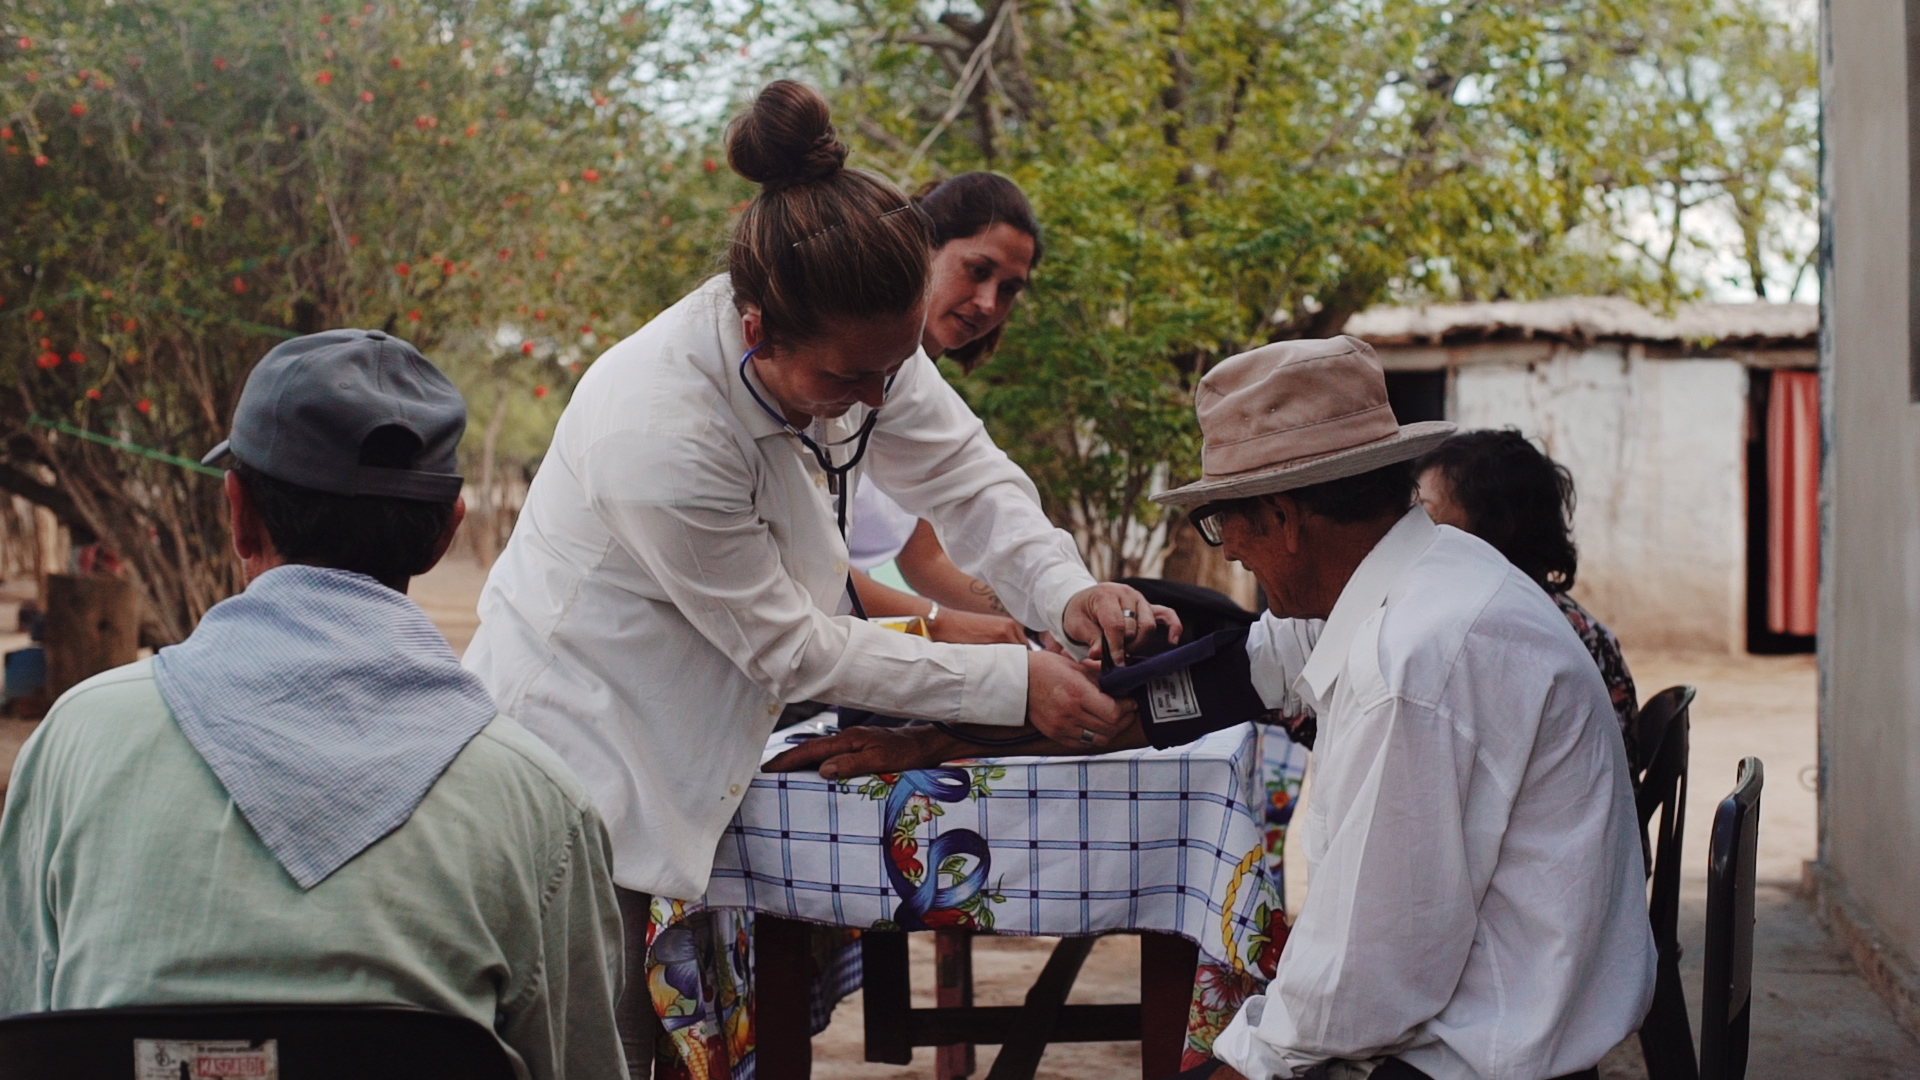 Sonia vive en un paraje de Córdoba y se capacitó como promotora de salud para ayudar a otras personas/ACIJ